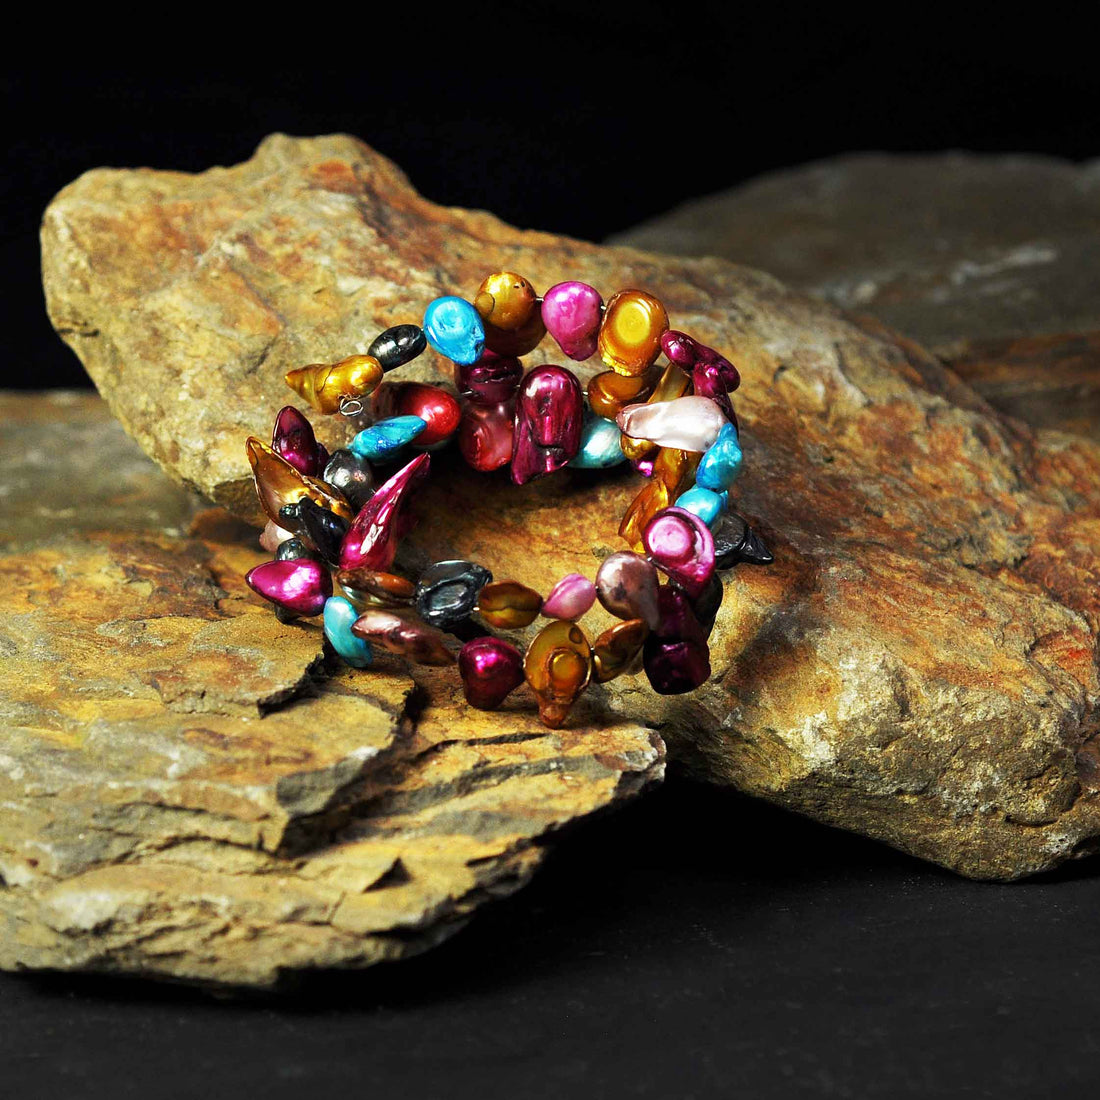 Zoetwater parel wikkel armband met vrolijke kleurtjes liggend op steen | Samba